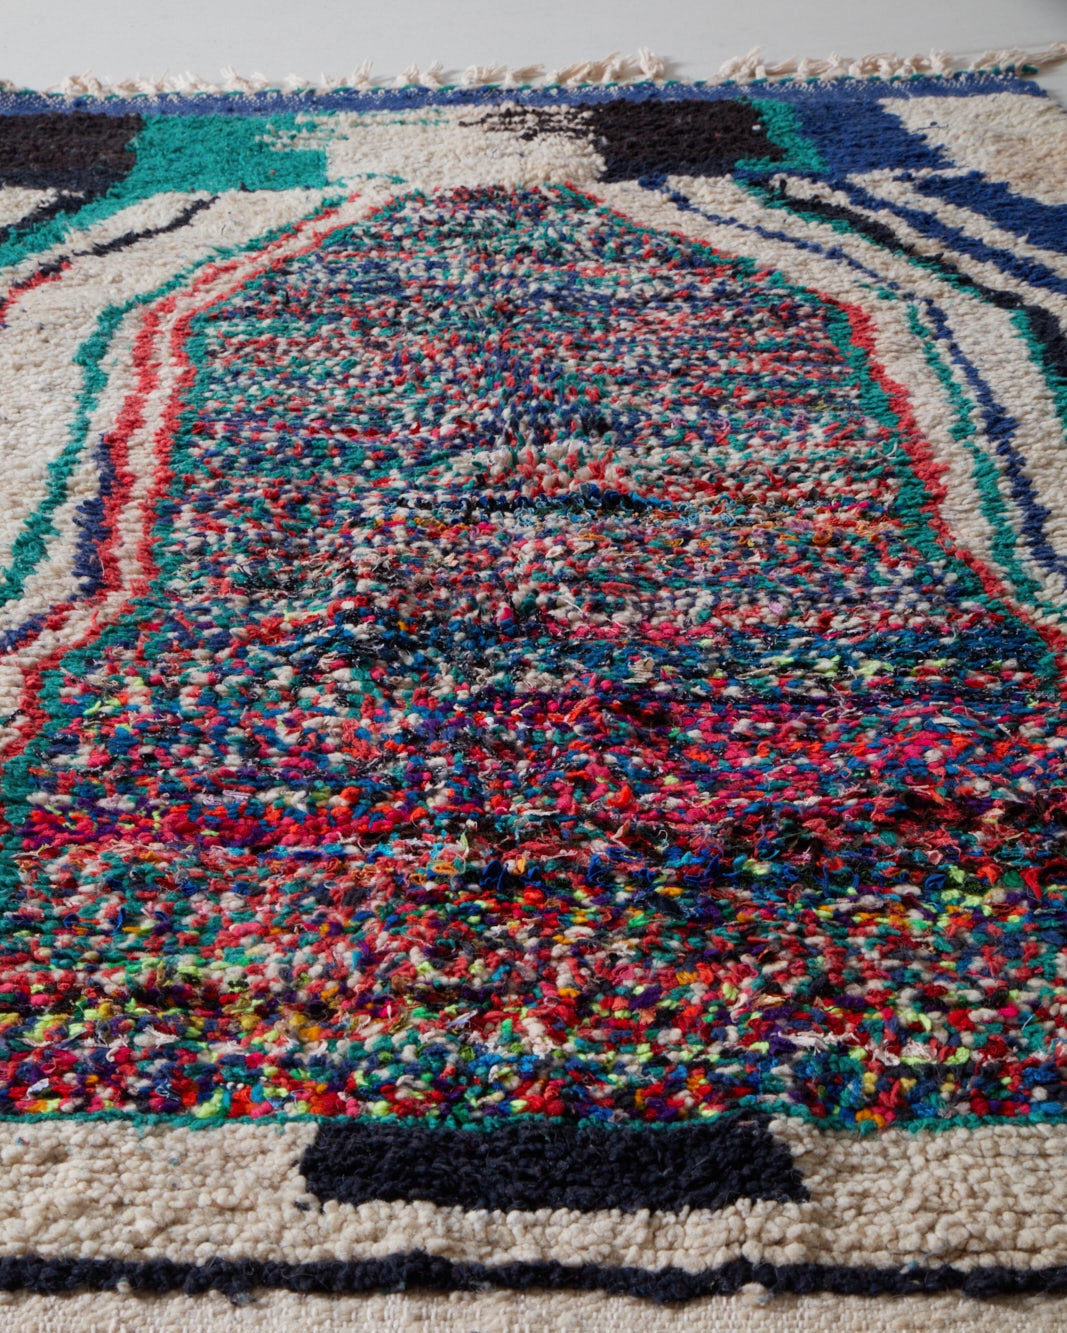 Dark vintage rug adorned with neons, middle